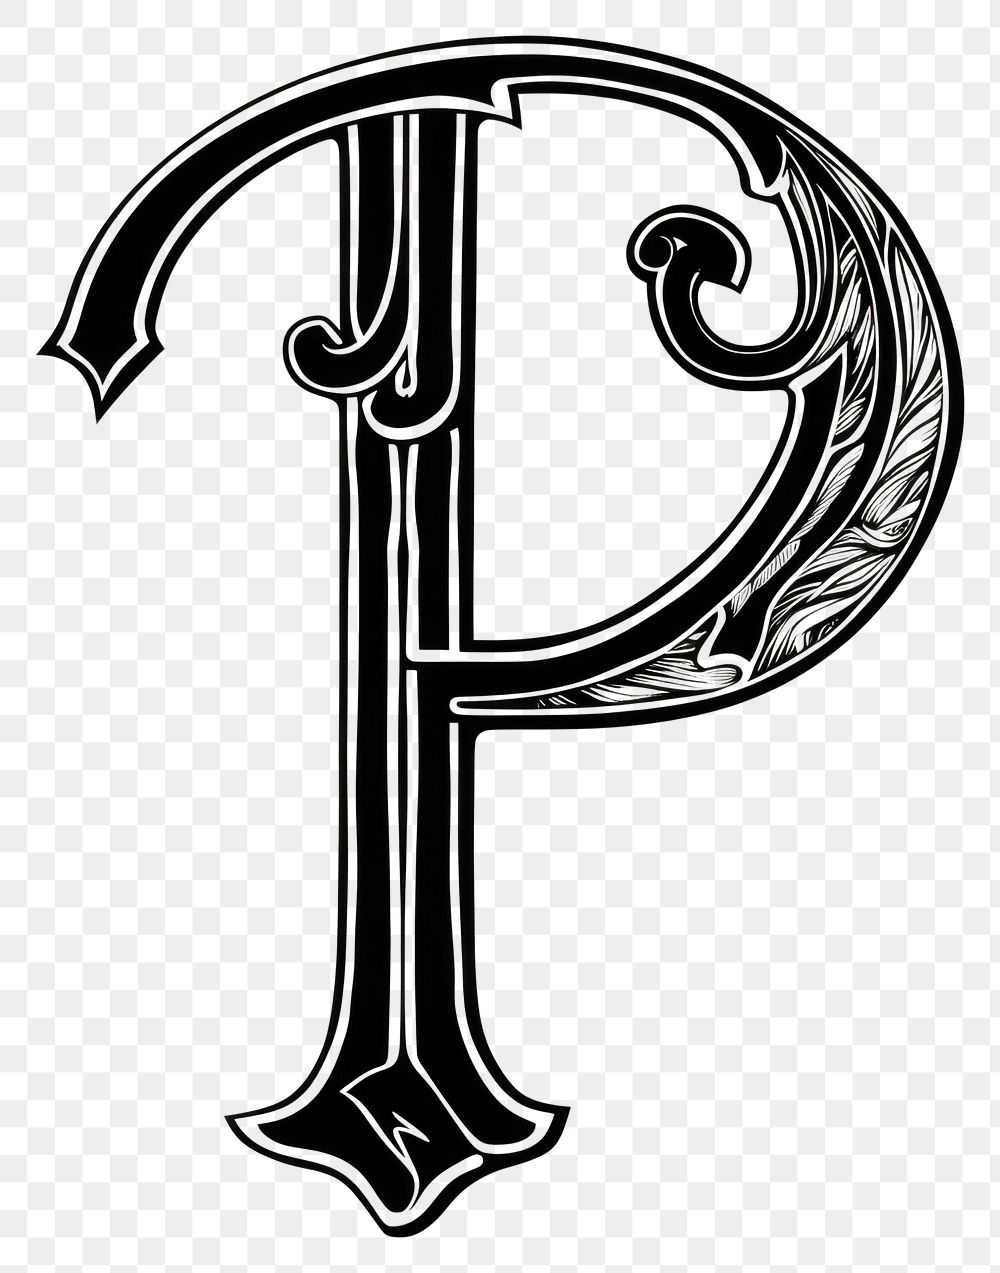 PNG P letter alphabet symbol cross text.